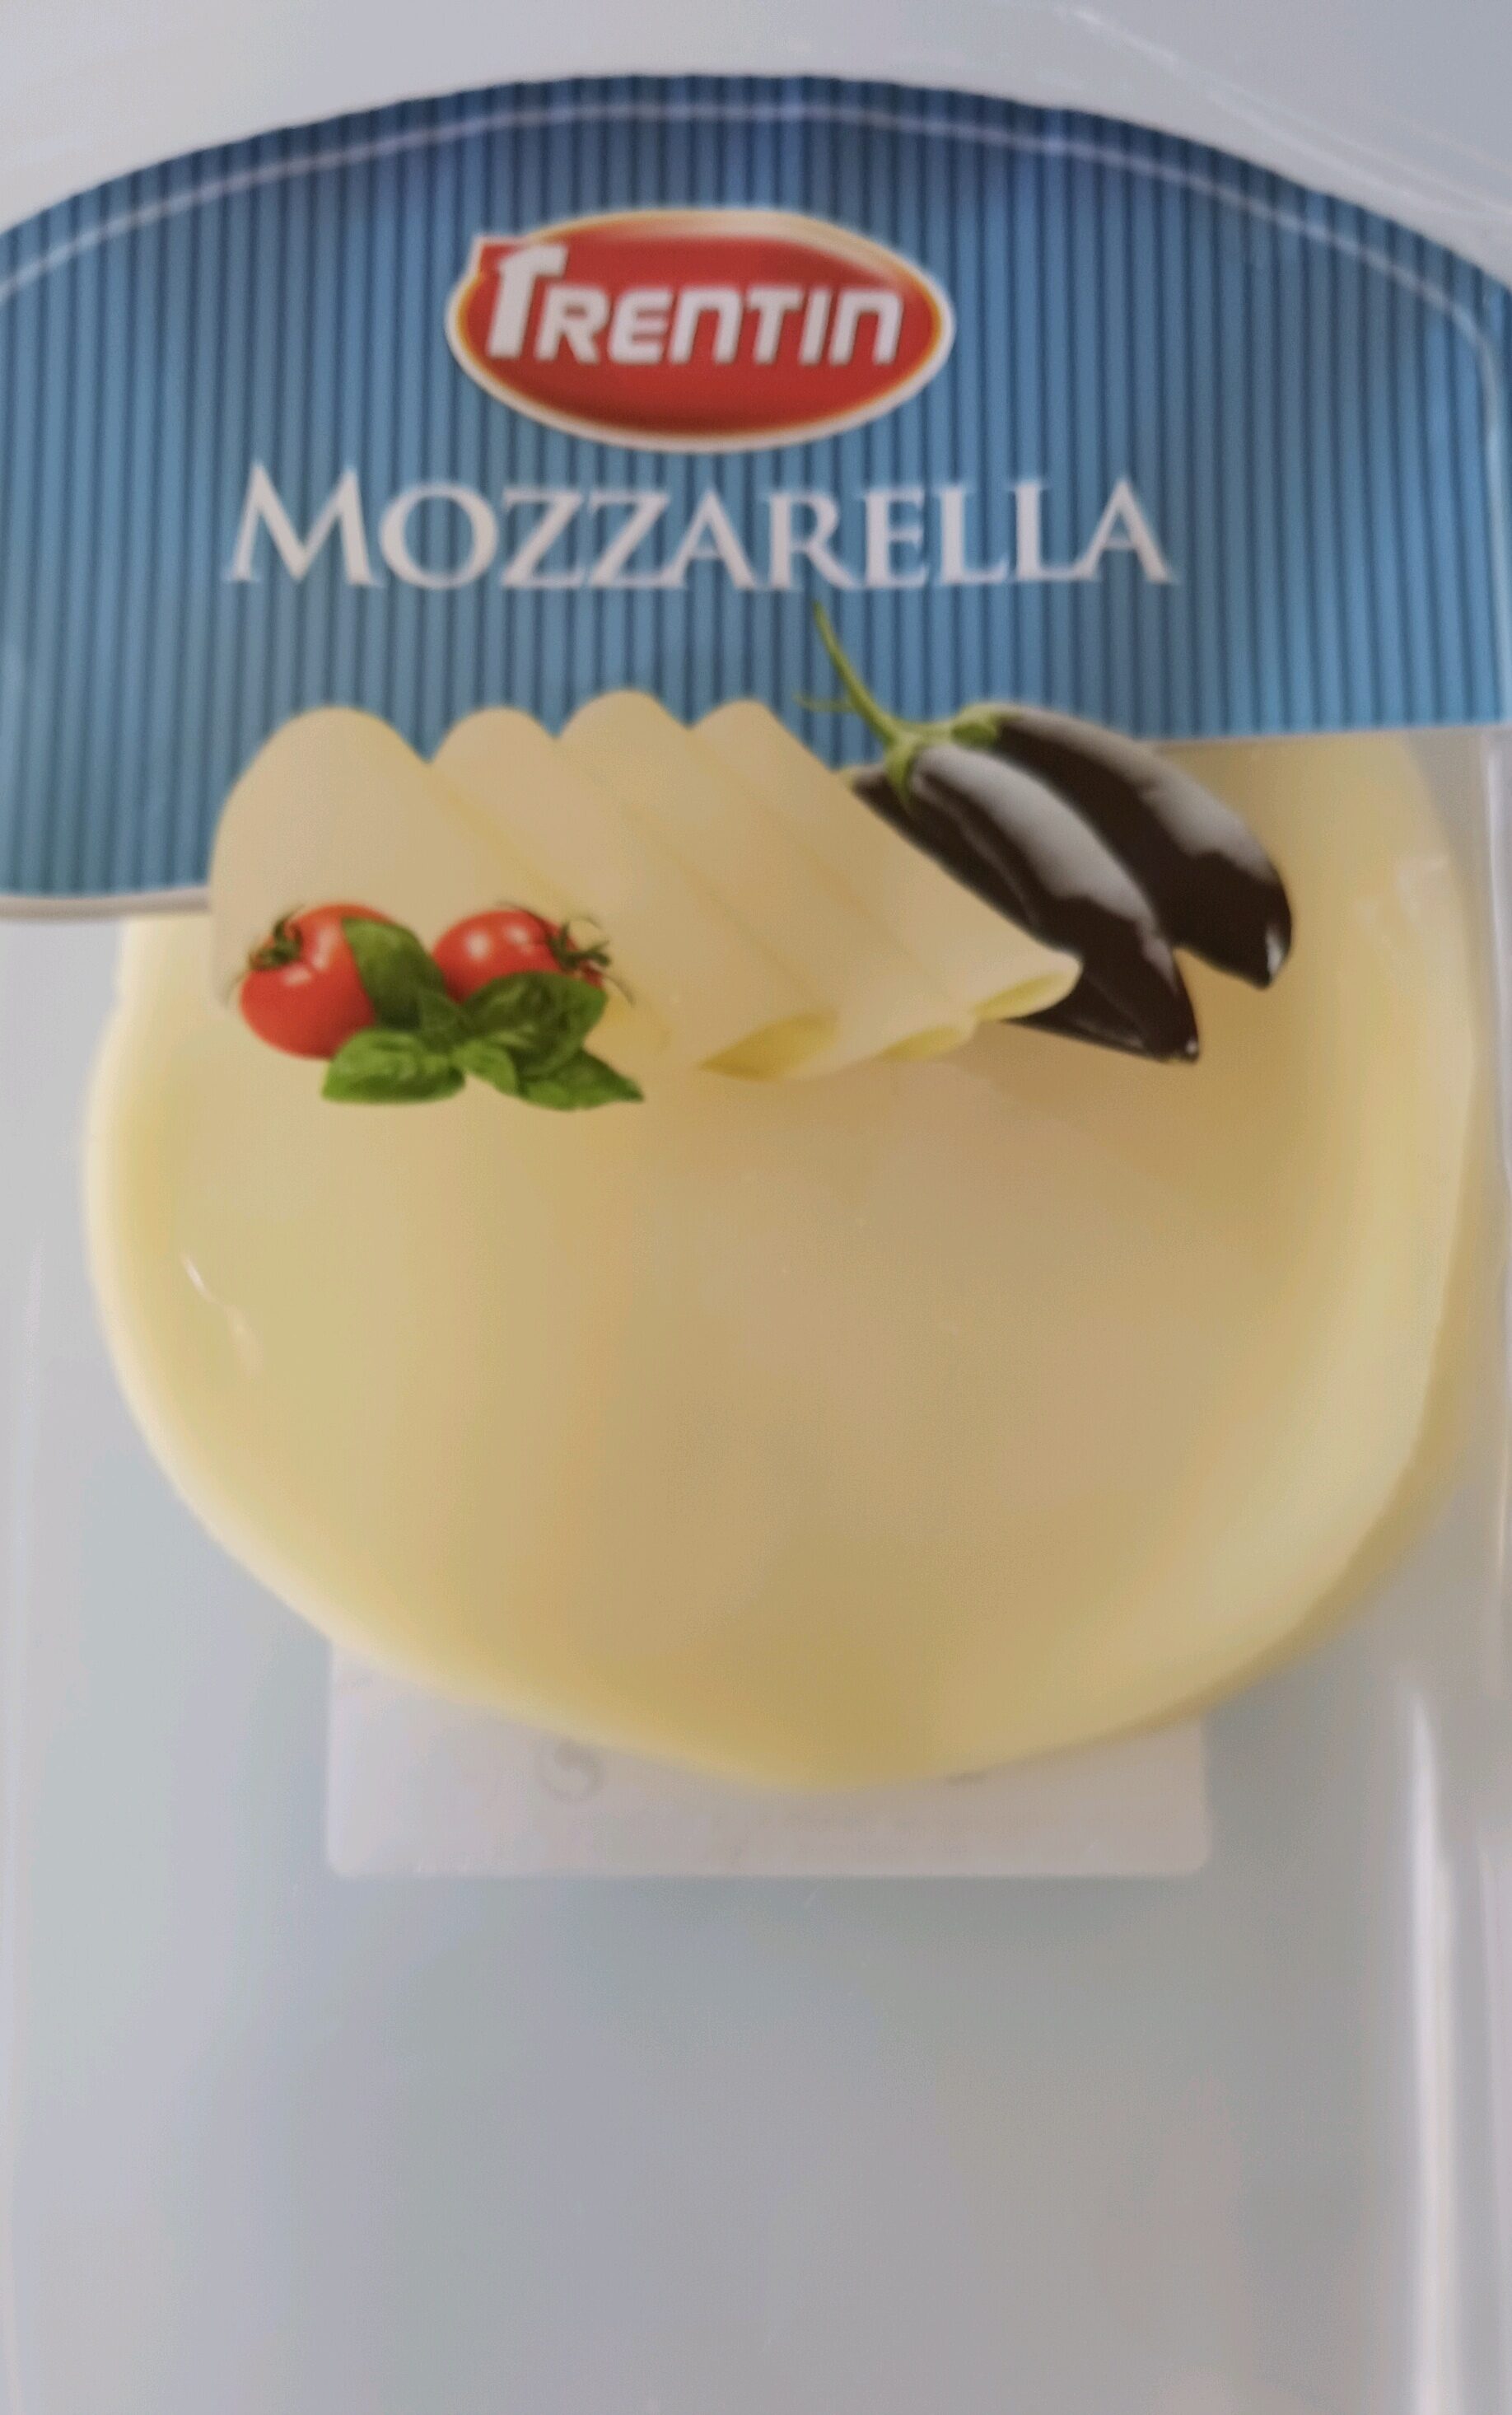 mozzarella - Product